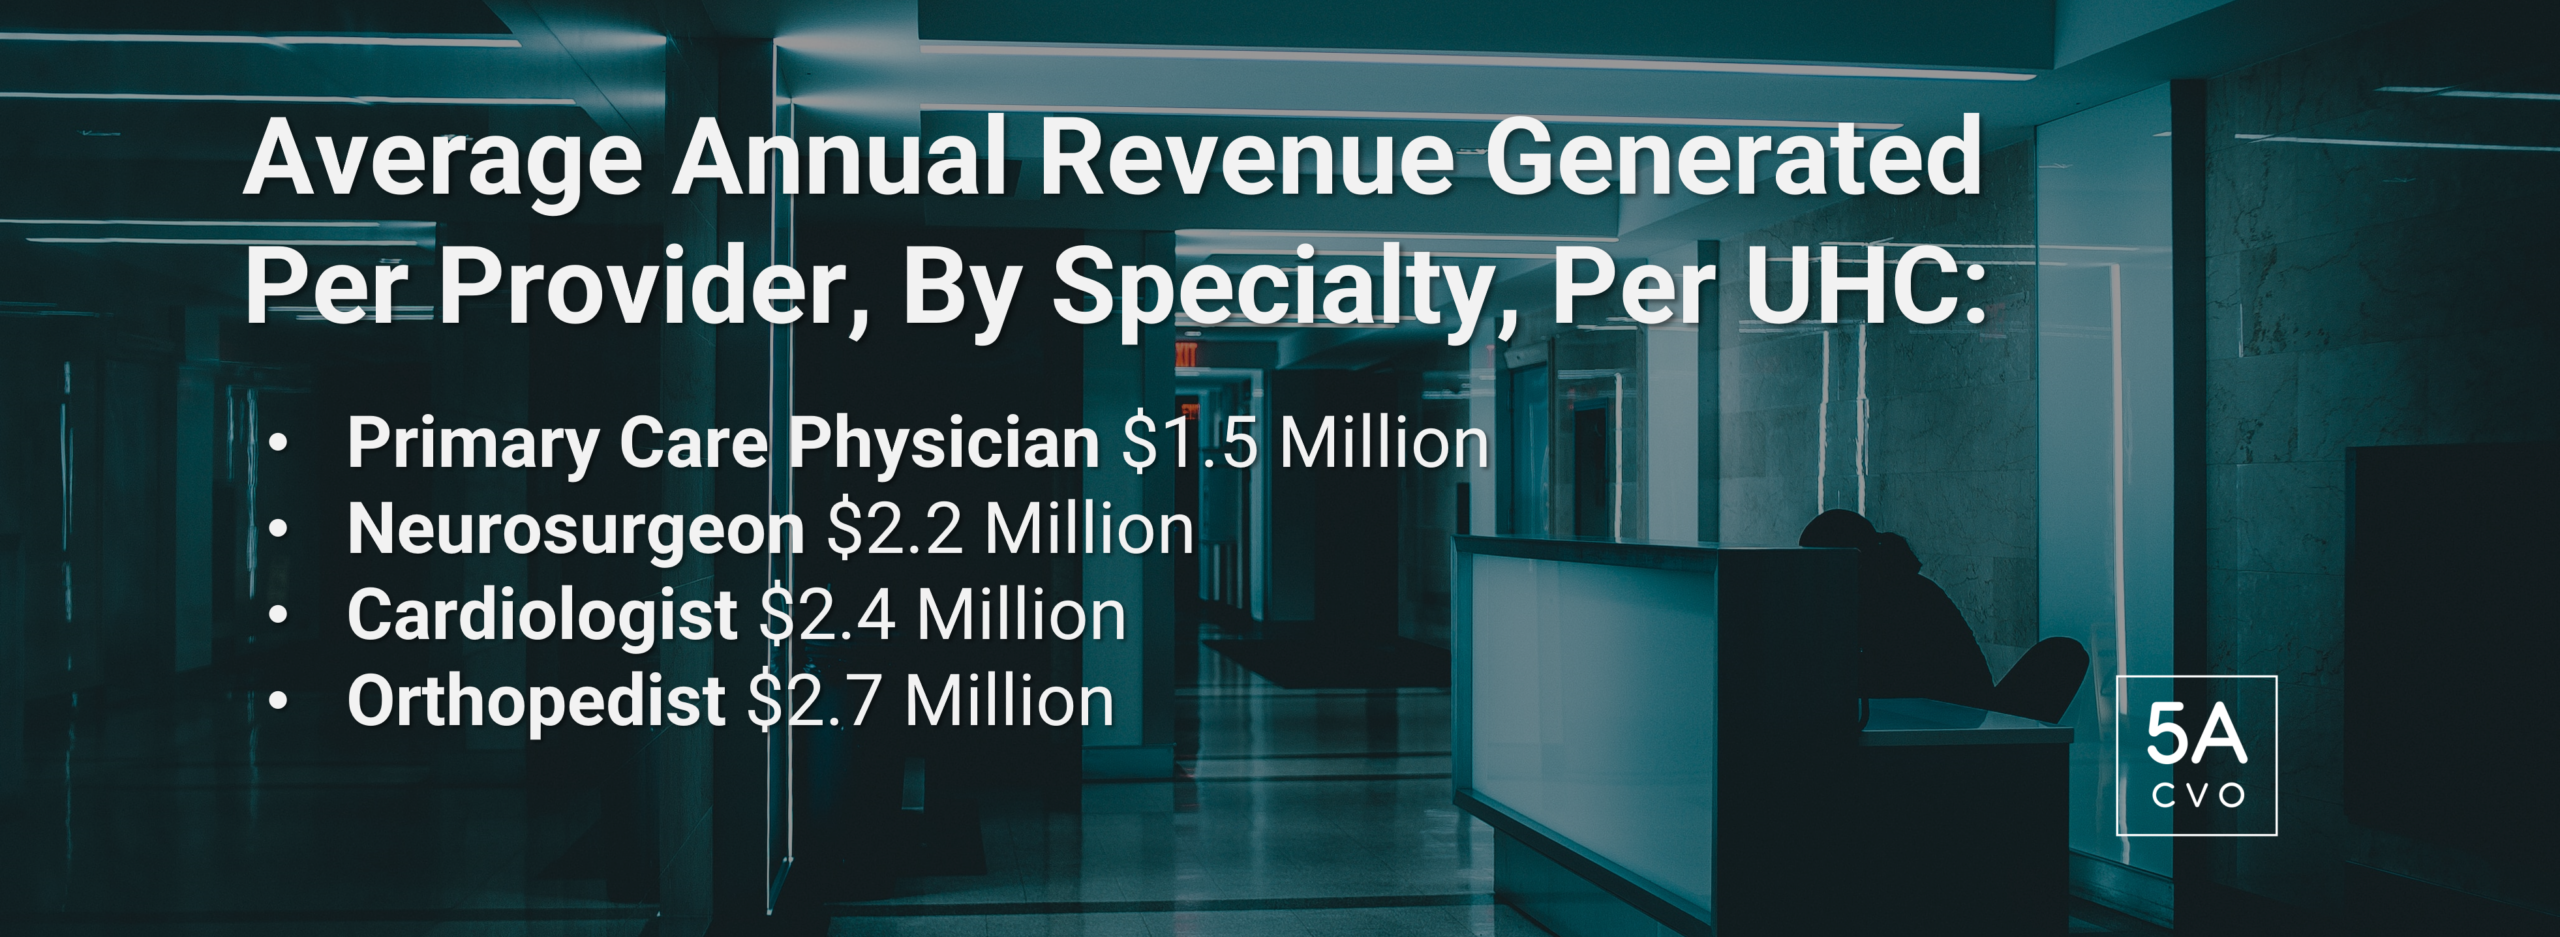 Average Annual Revenue Per Provider Per Specialty Per UHC